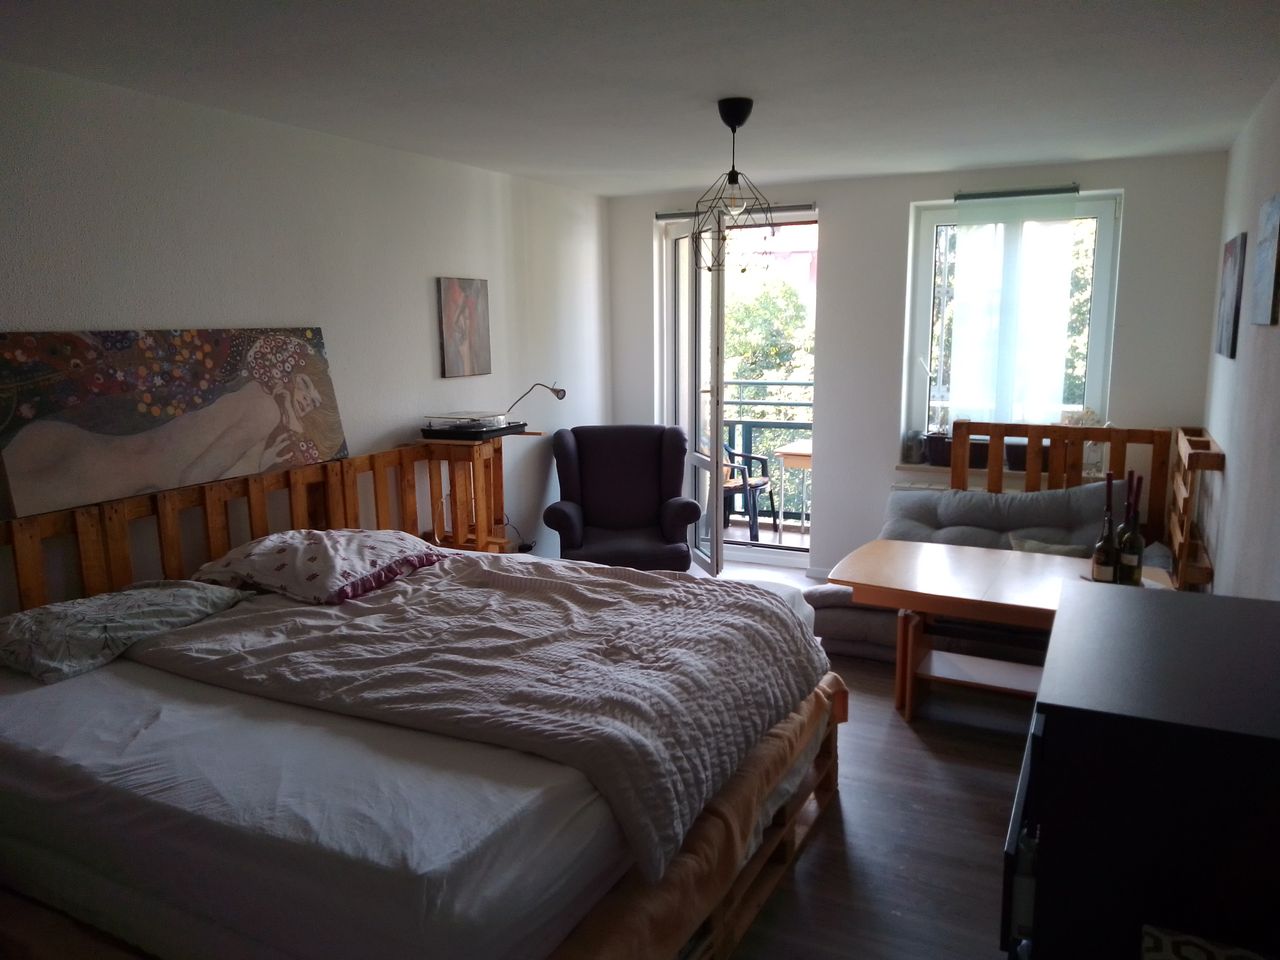 Apartment between Rosengarten and Neustadt with balcony